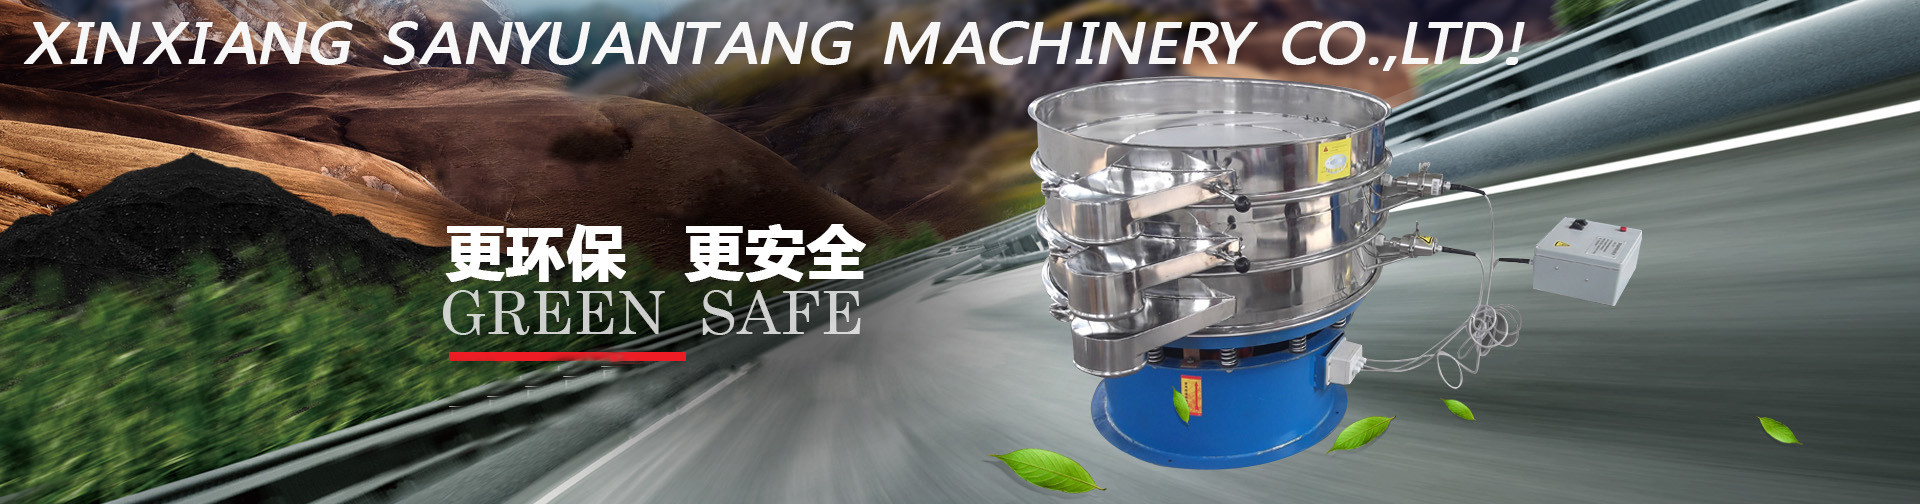 Xinxiang Sanyuantang Machinery Co.,Ltd